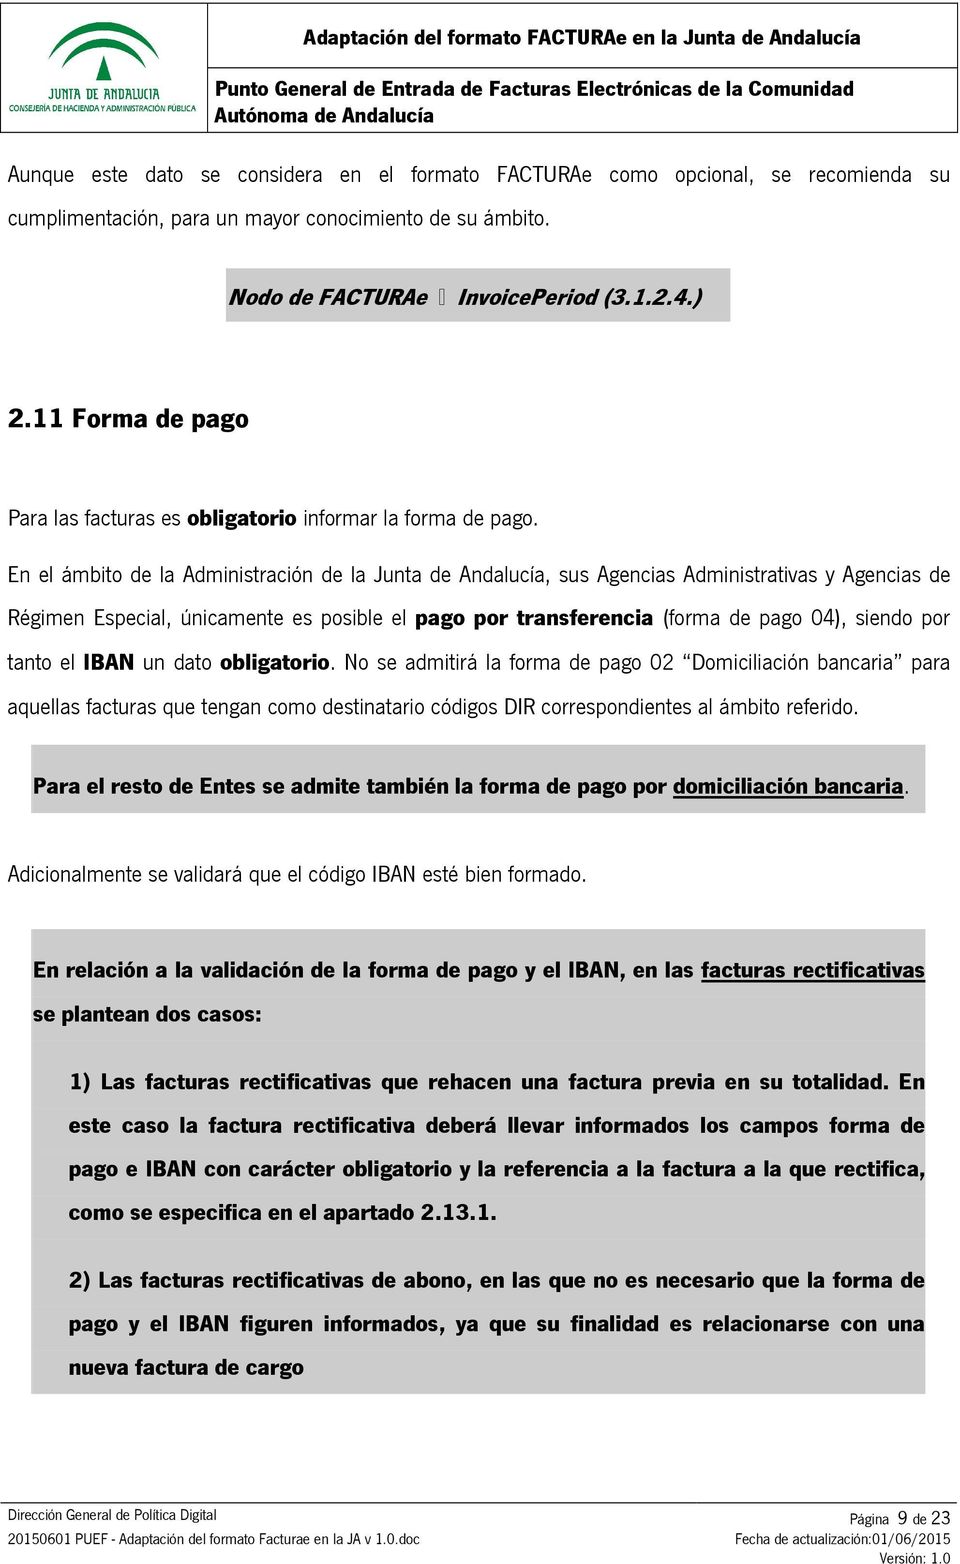 En el ámbito de la Administración de la Junta de Andalucía, sus Agencias Administrativas y Agencias de Régimen Especial, únicamente es posible el pago por transferencia (forma de pago 04), siendo por